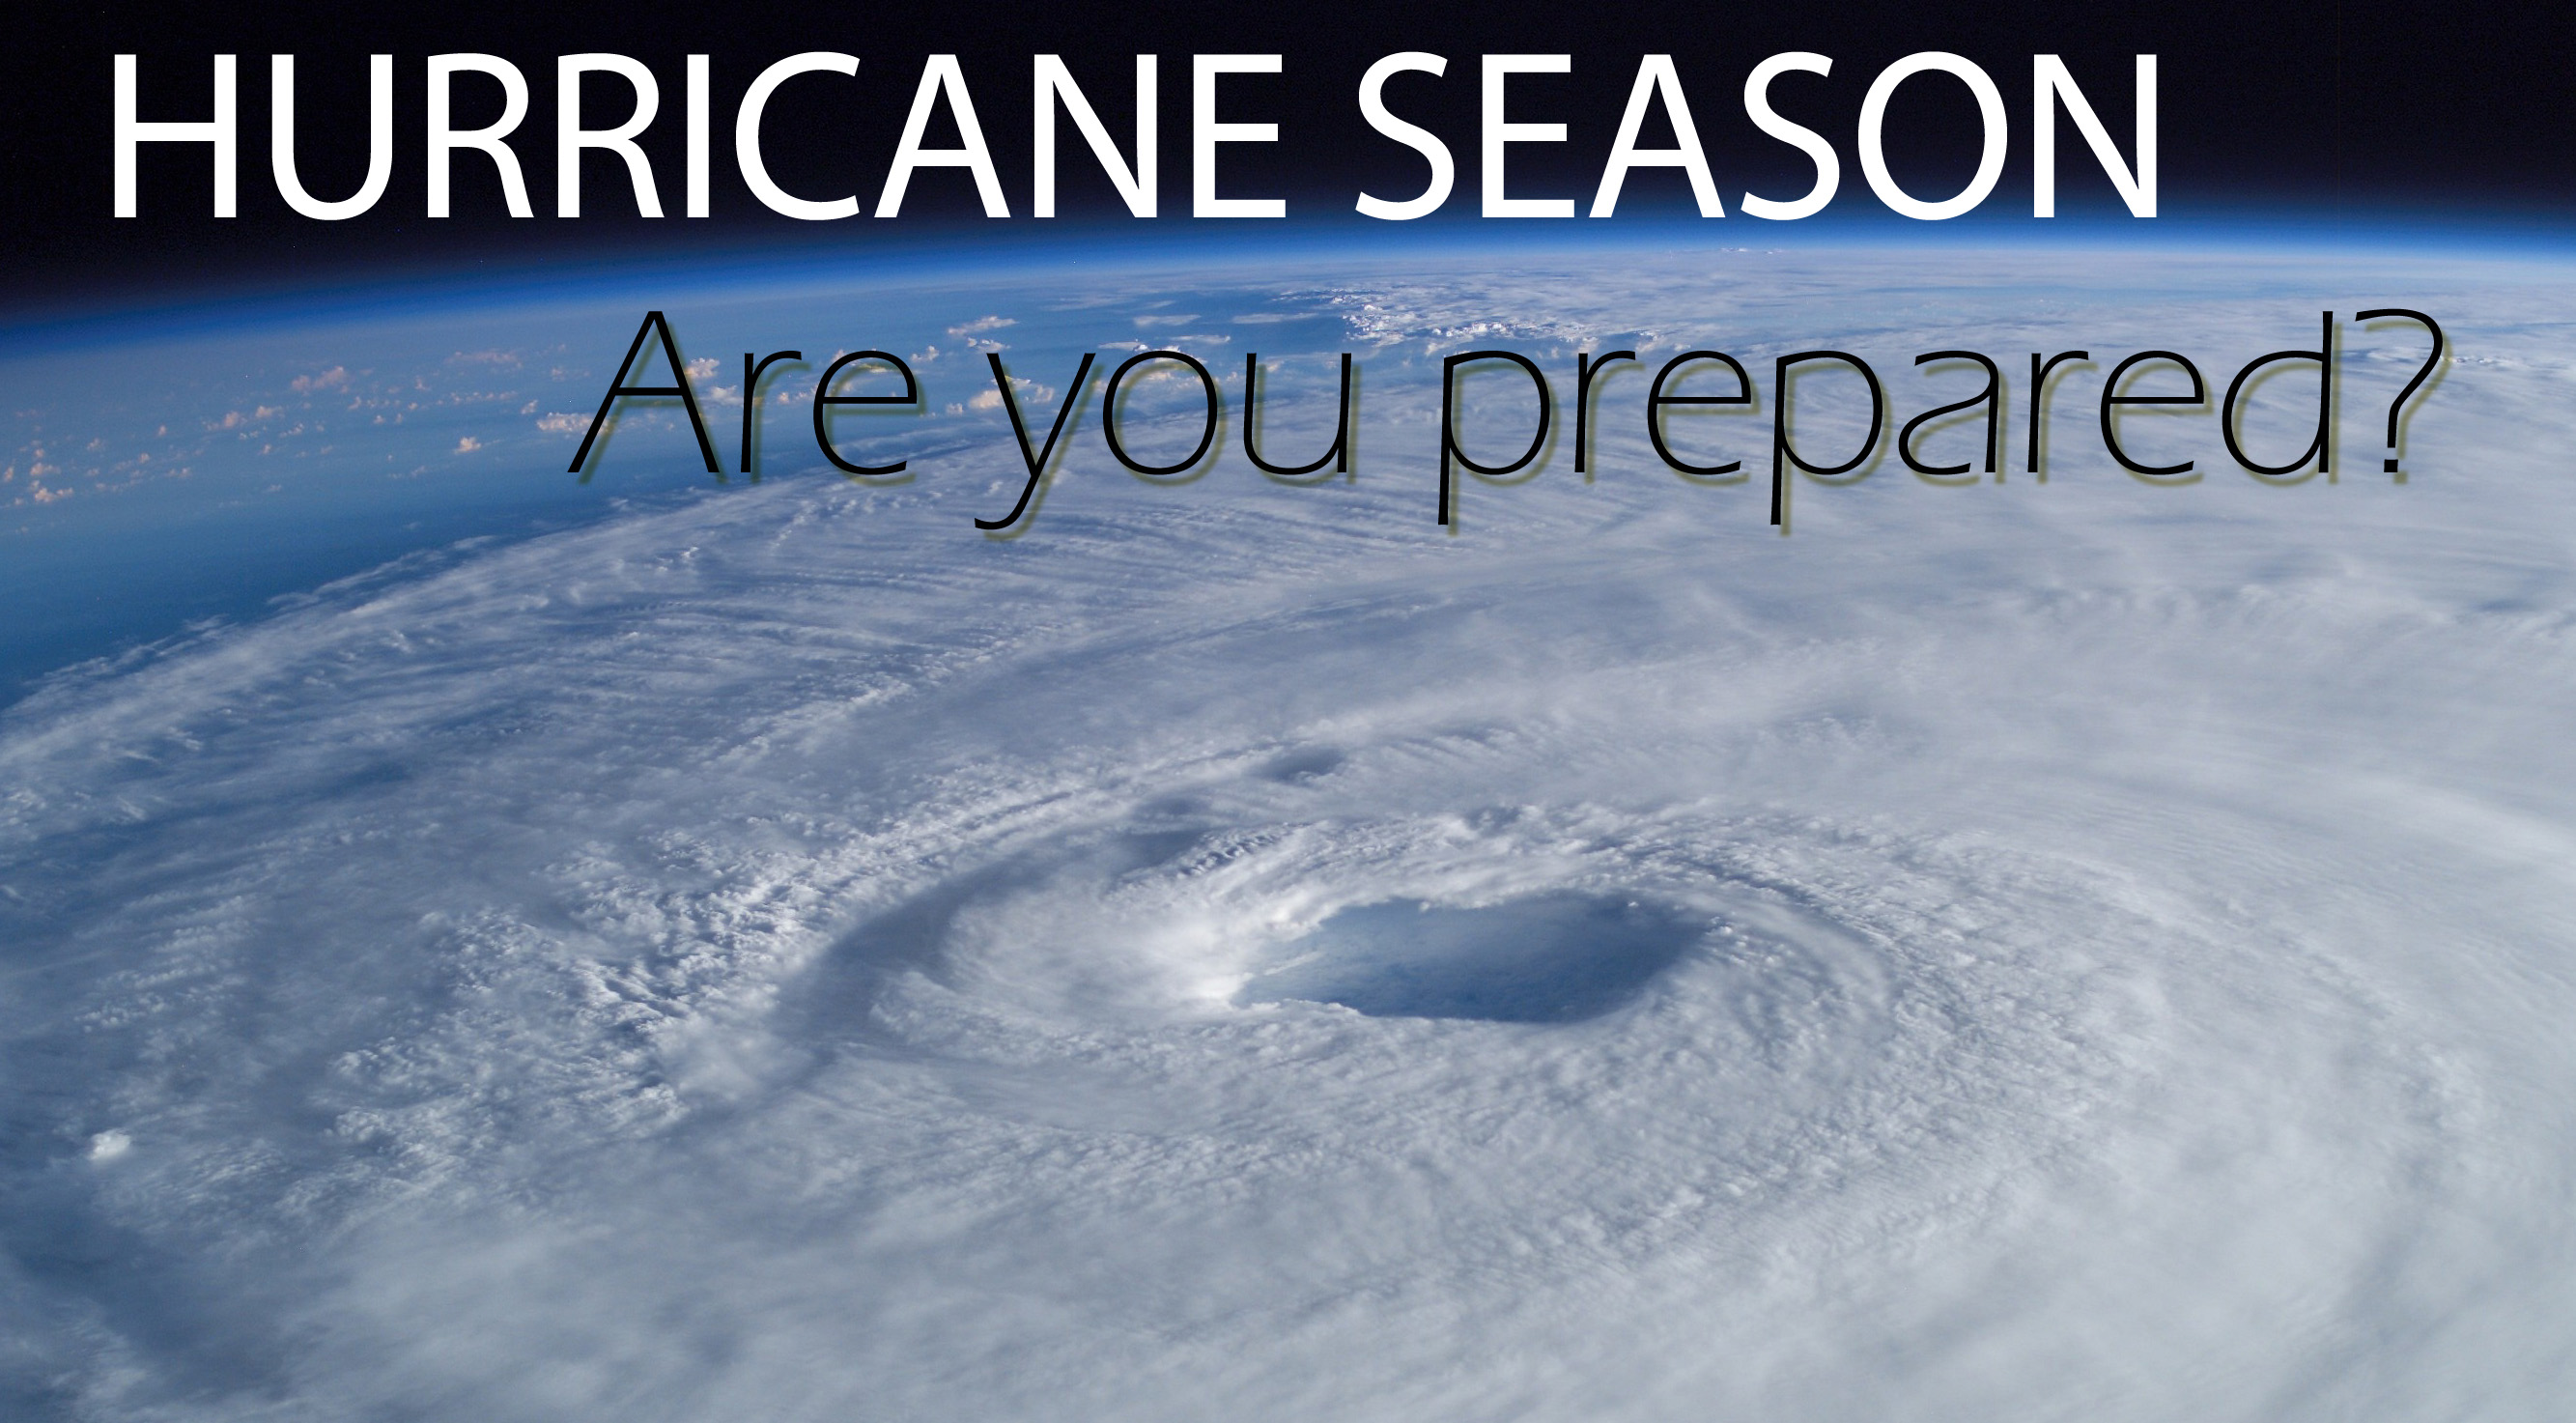 How to Prepare for Hurricane Season